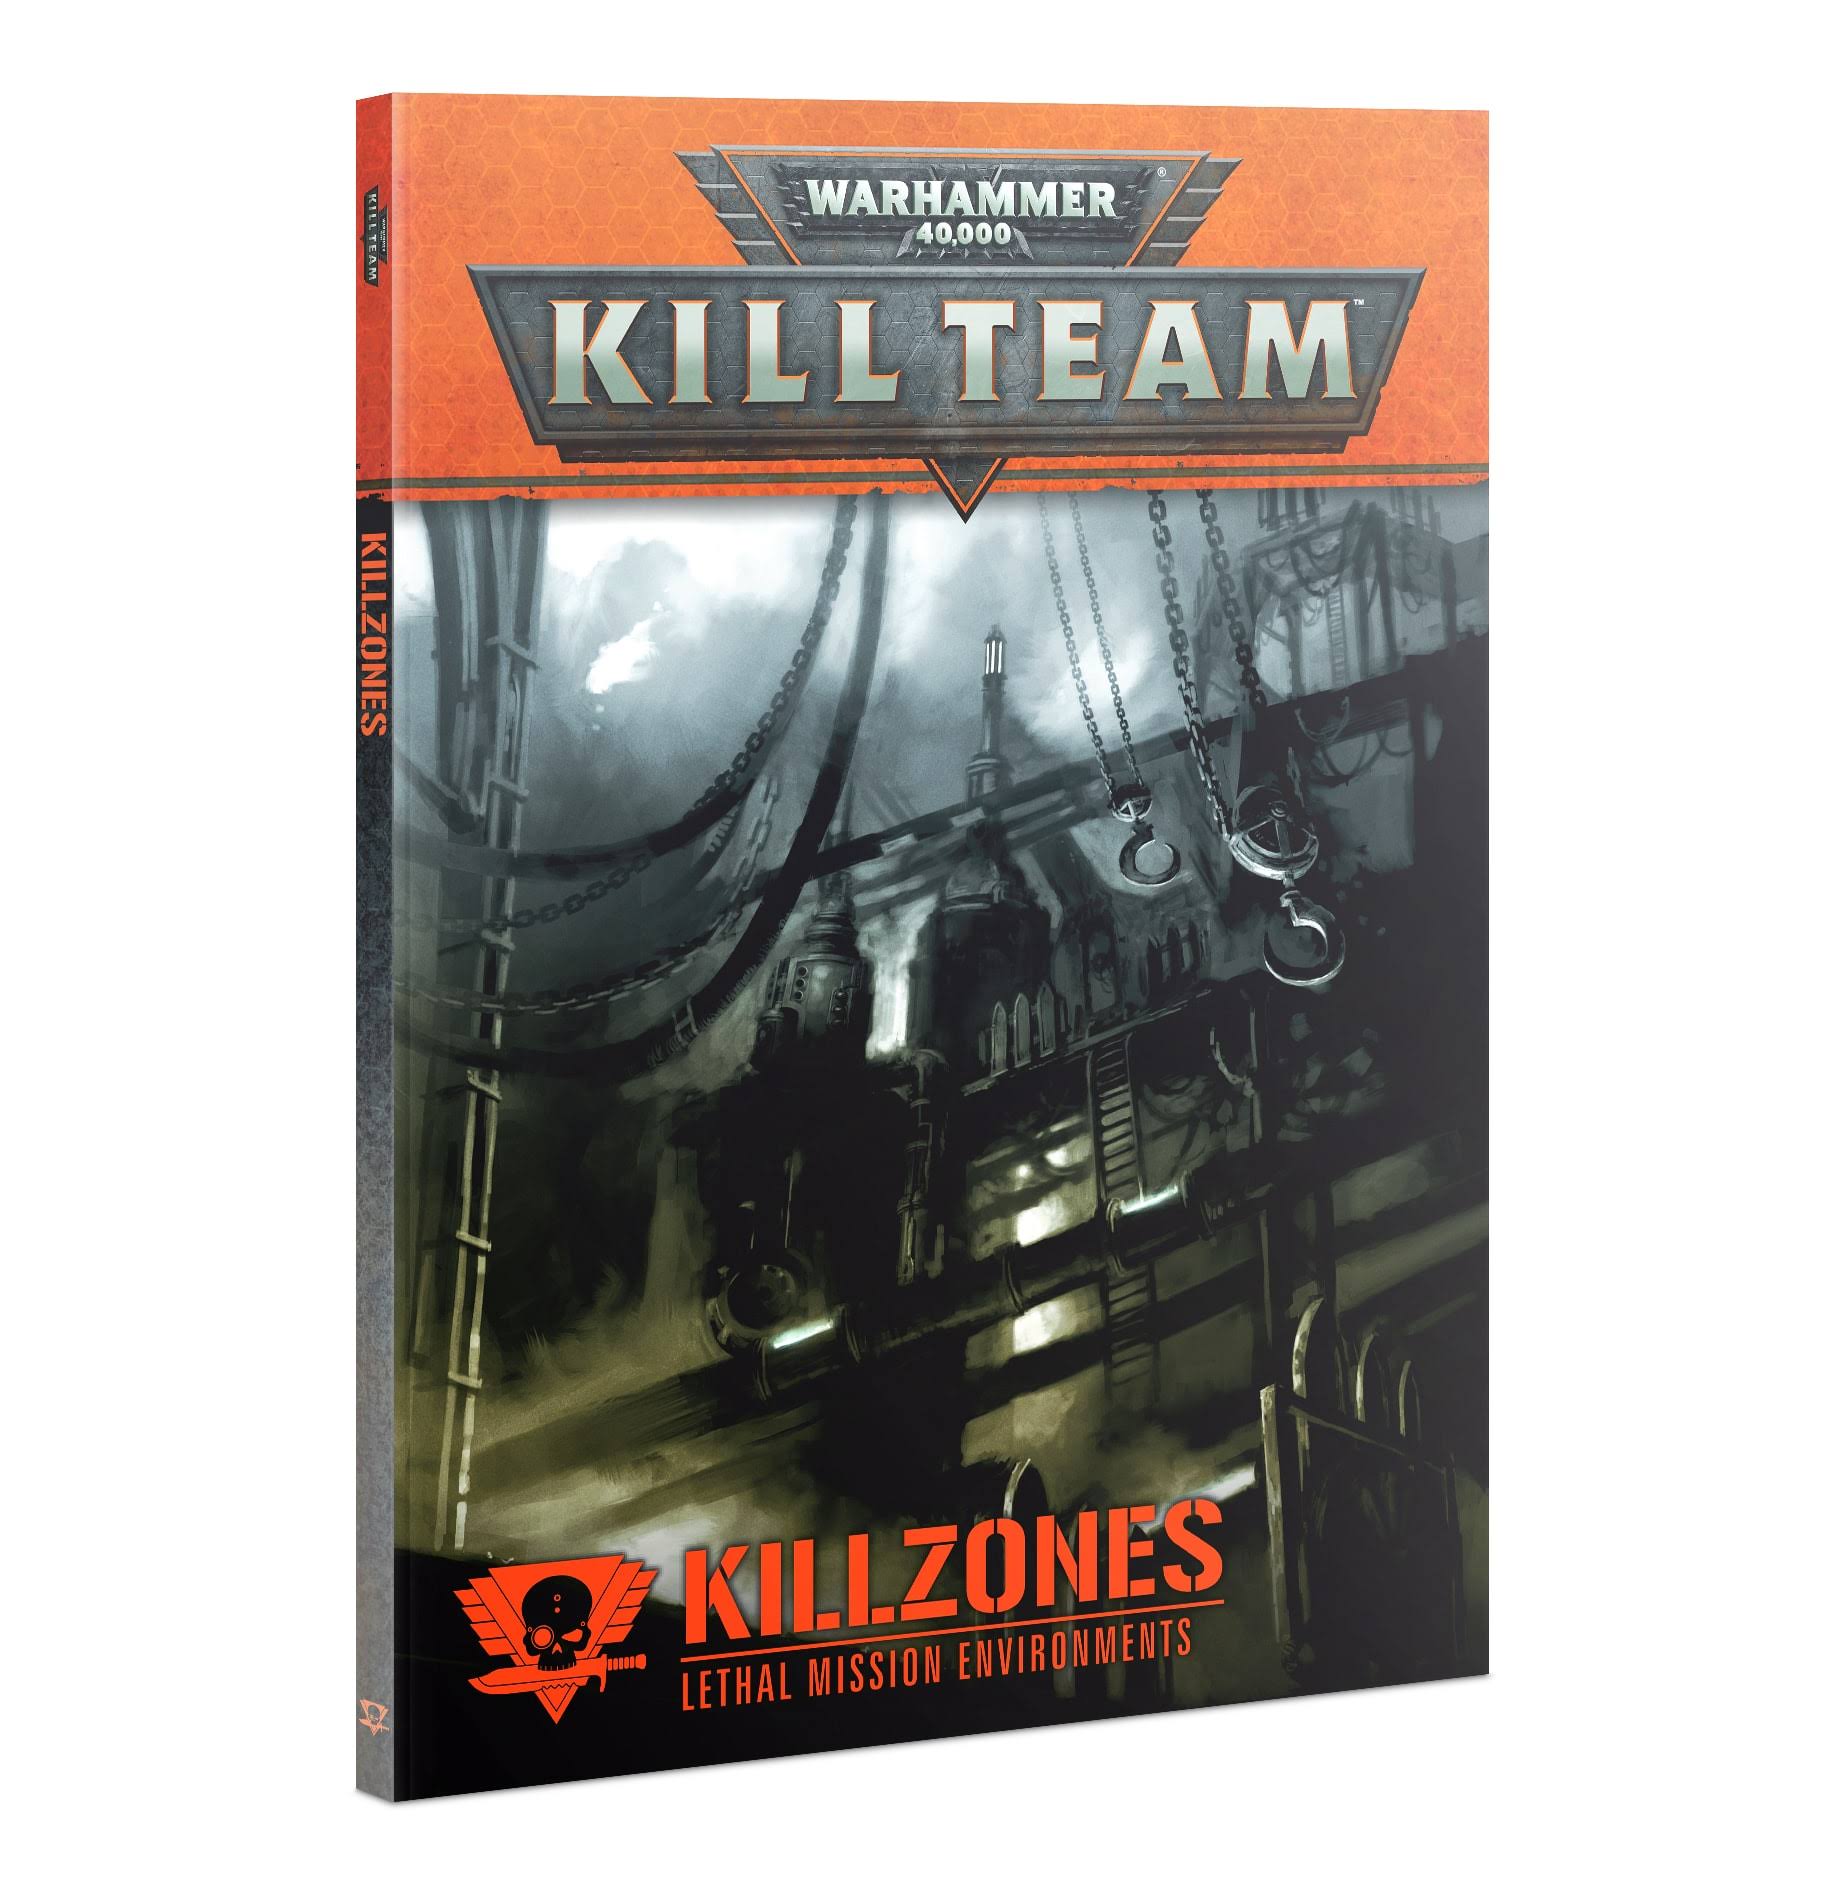 Warhammer 40,000 Kill Team: Killzones